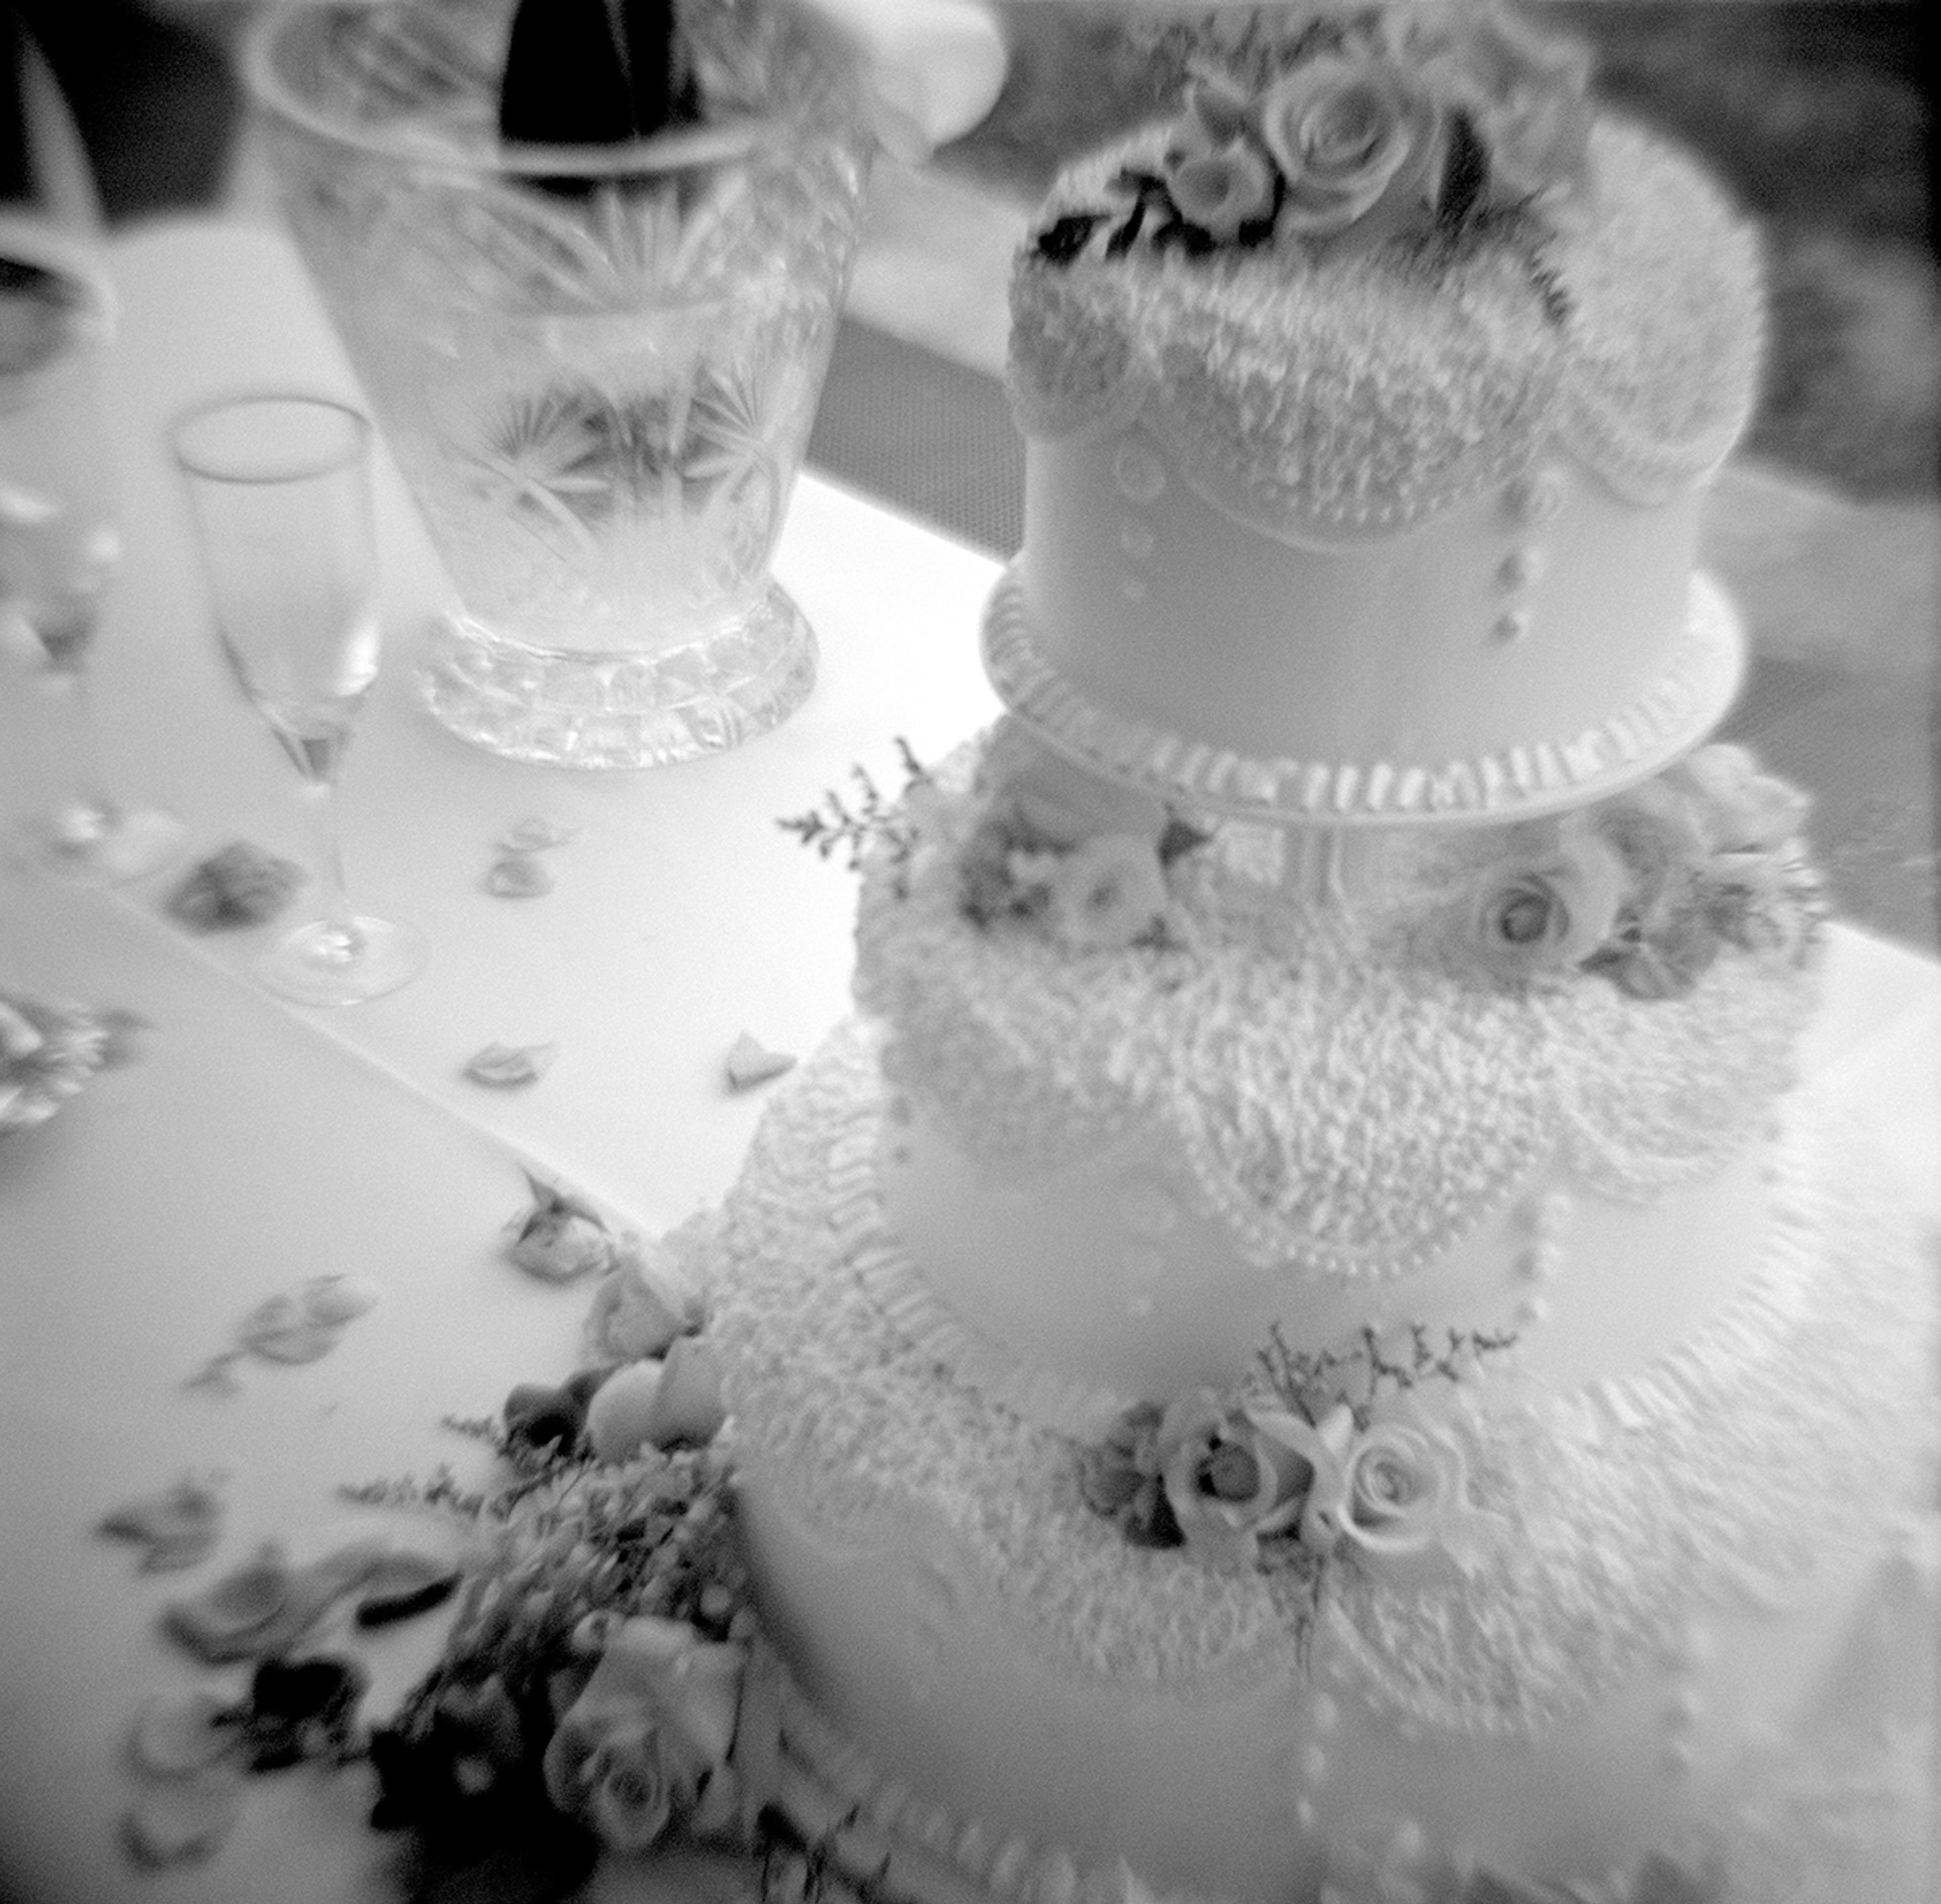 Dekket bryllupsbord med kake